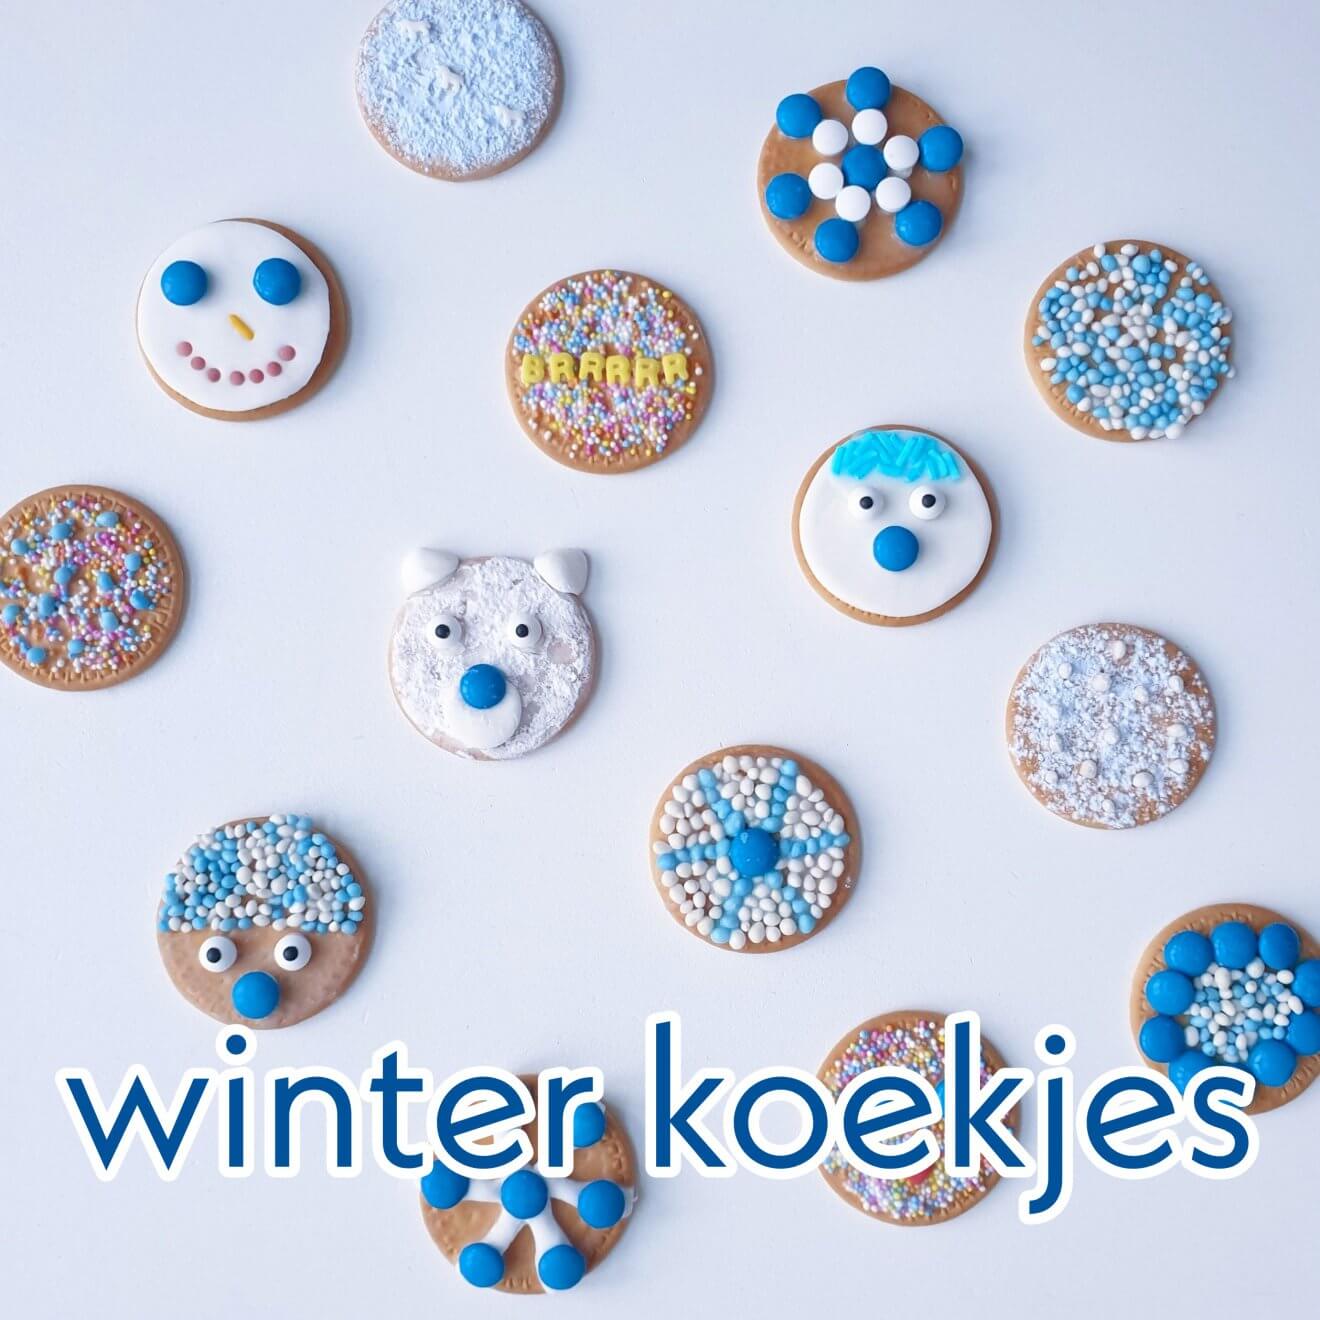 Winter koekjes bakken en versieren